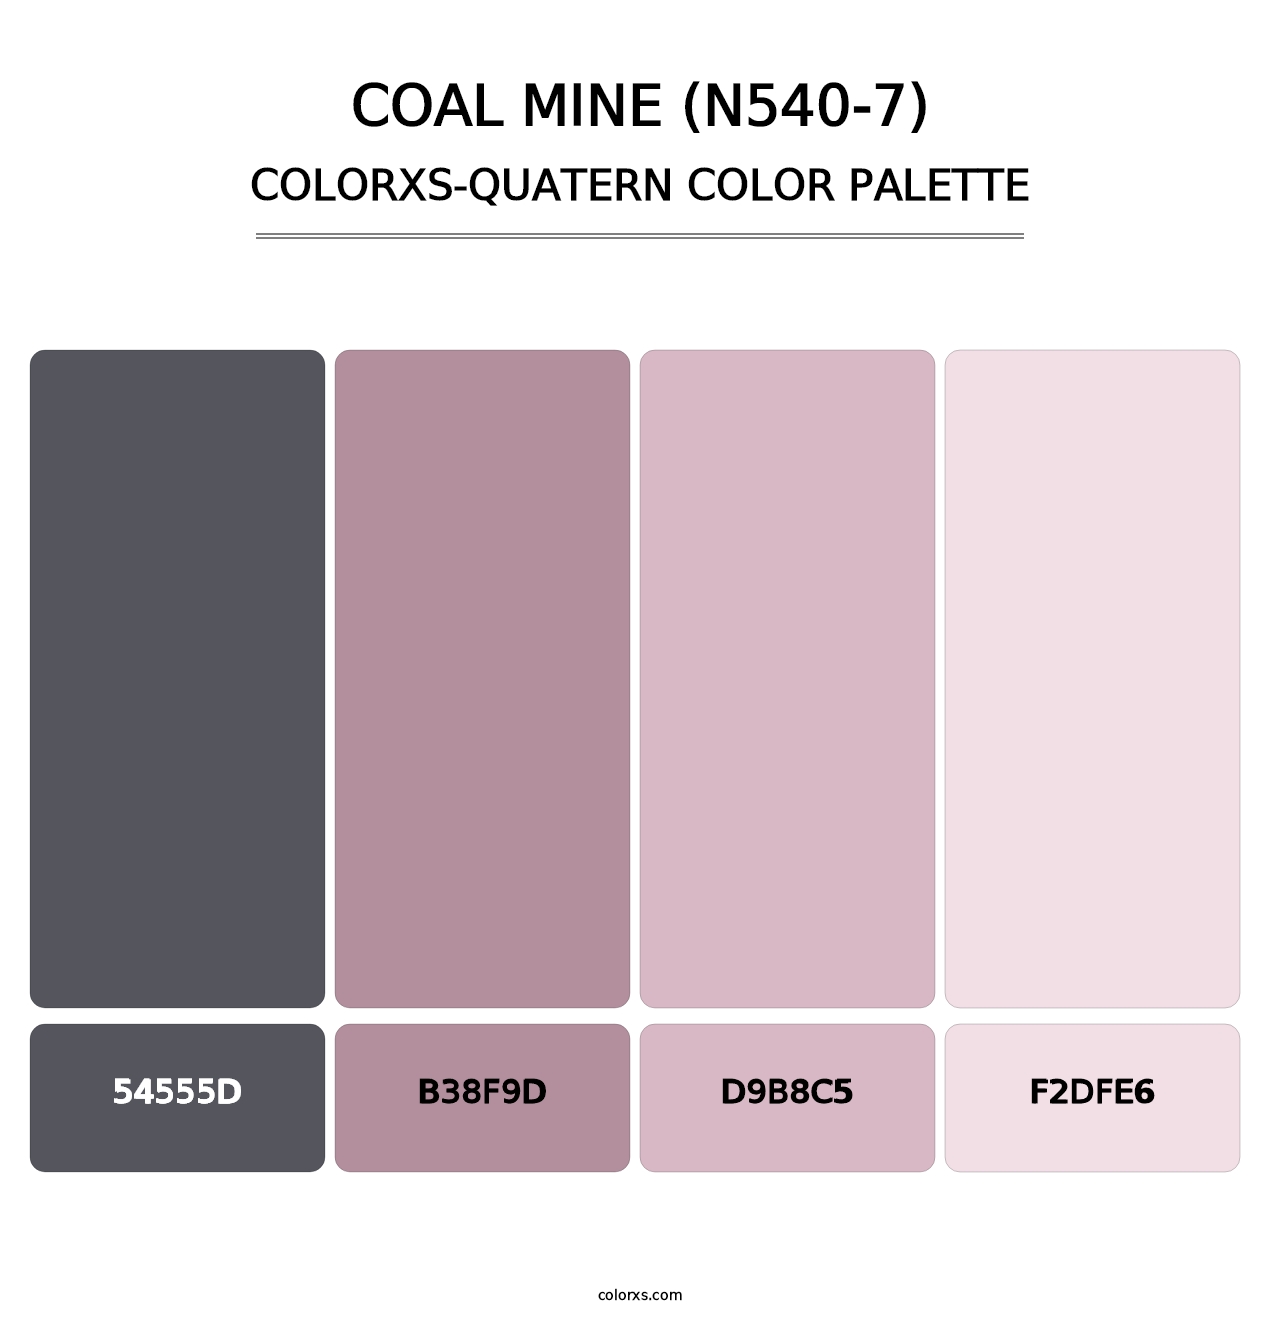 Coal Mine (N540-7) - Colorxs Quatern Palette